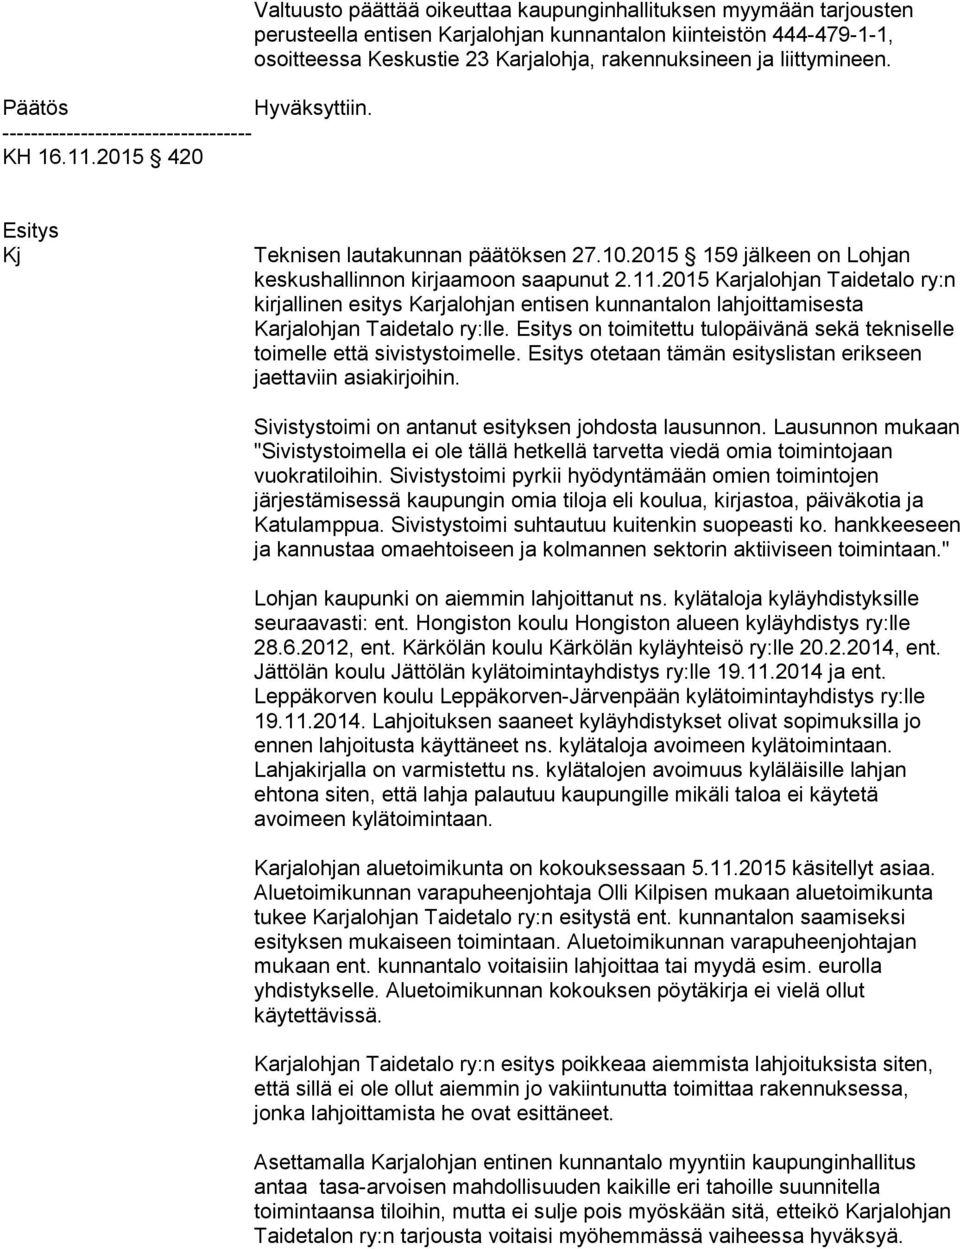 ja liit ty mi neen. Kj Teknisen lautakunnan päätöksen 27.10.2015 159 jälkeen on Lohjan keskushallinnon kirjaamoon saapunut 2.11.